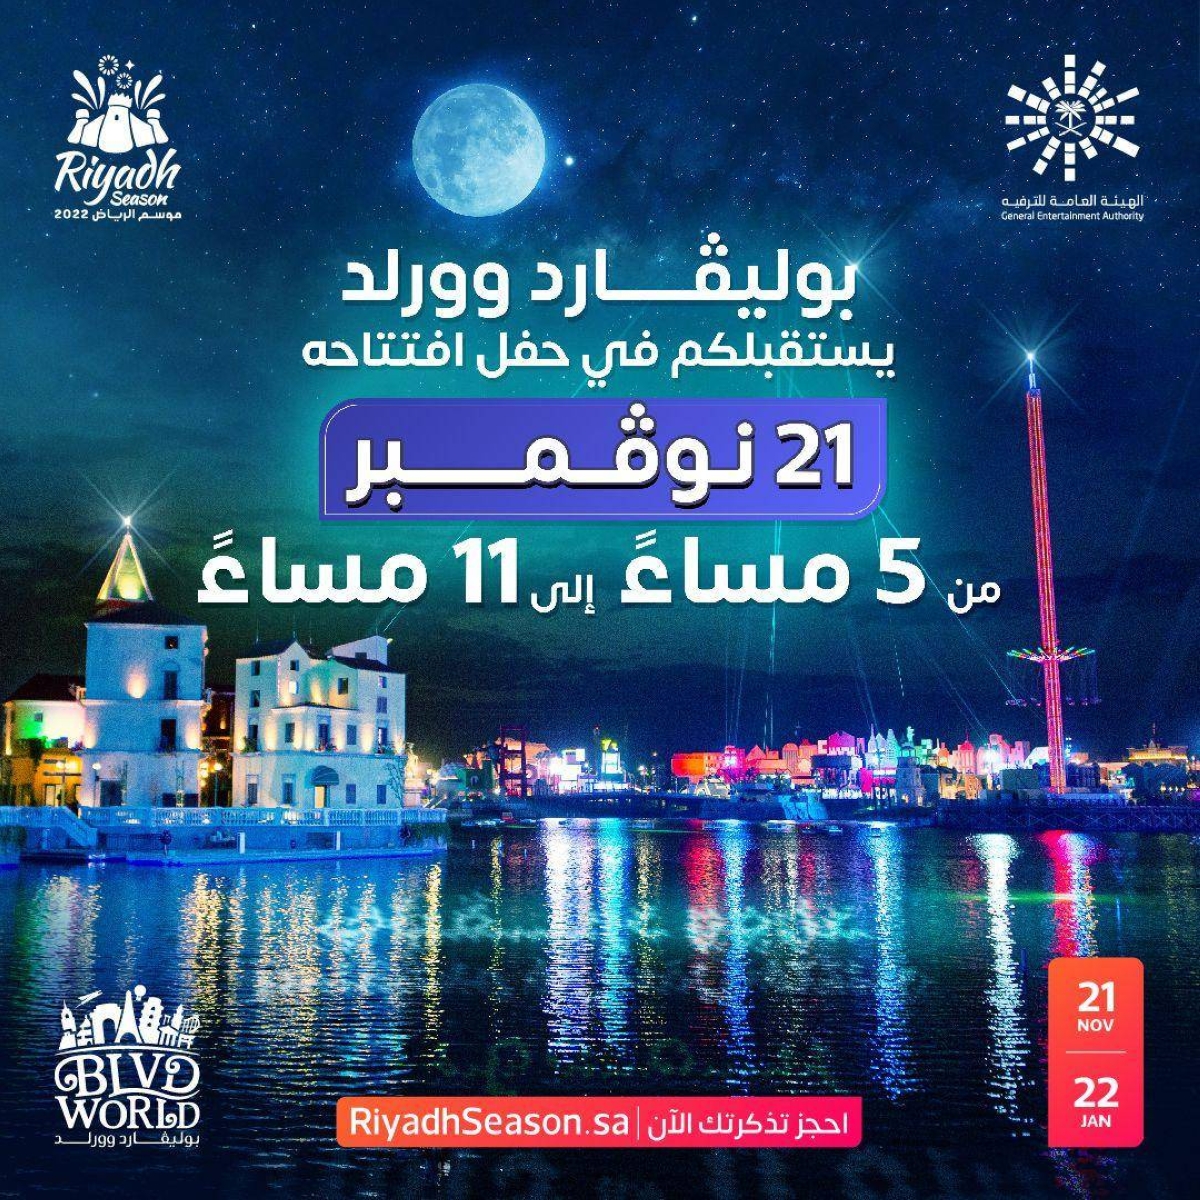 Boulevard World .. l’icône des expériences mondiales et le premier quartier de divertissement de la saison 2022 à Riyad